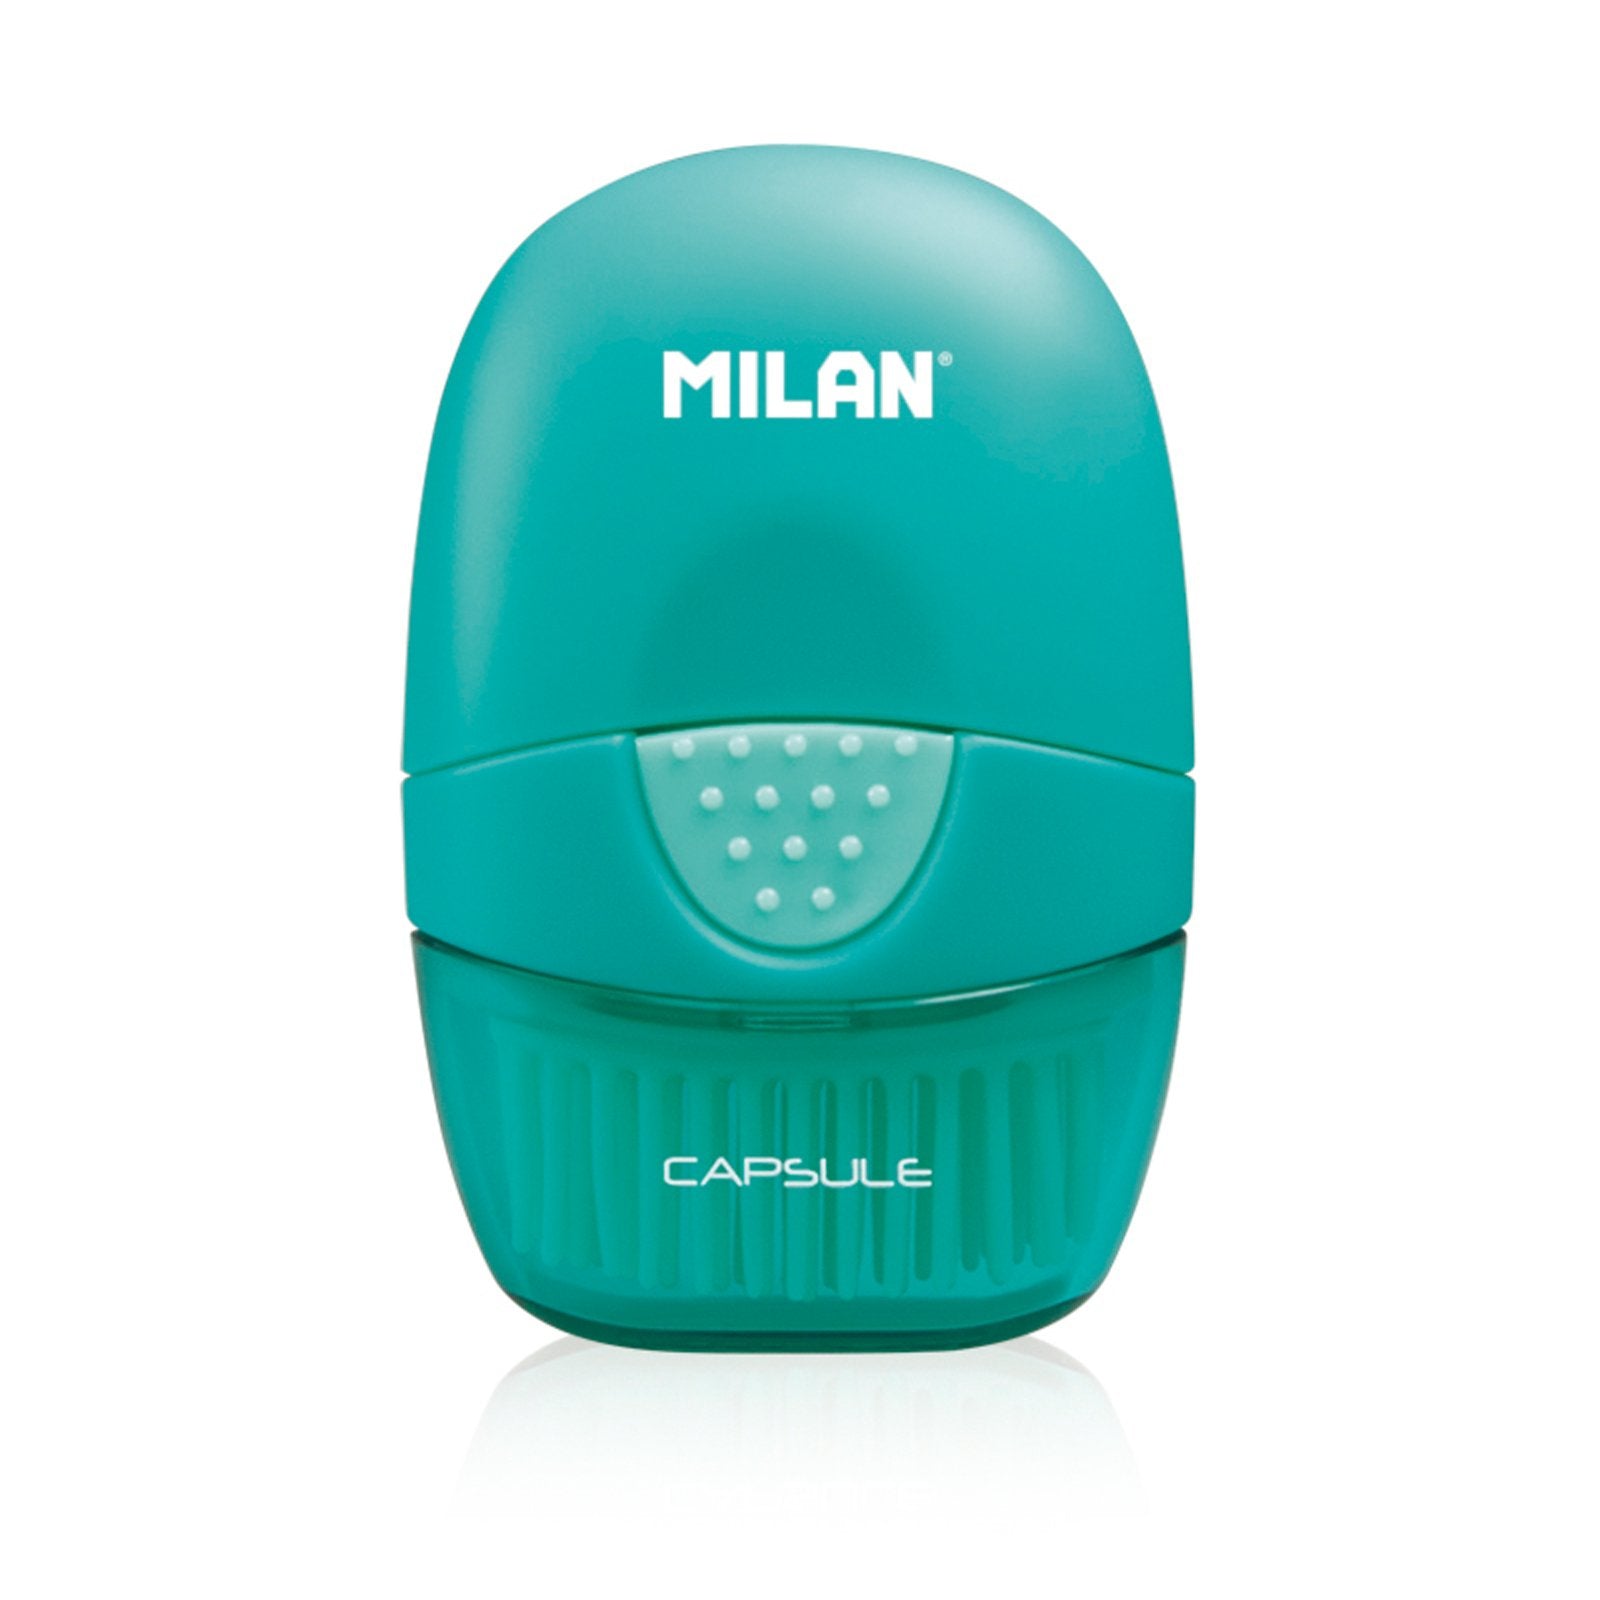 MILAN 4900116 - Eraser & Brush, Combinación de Goma y Cepillo. Diseño CAPSULE